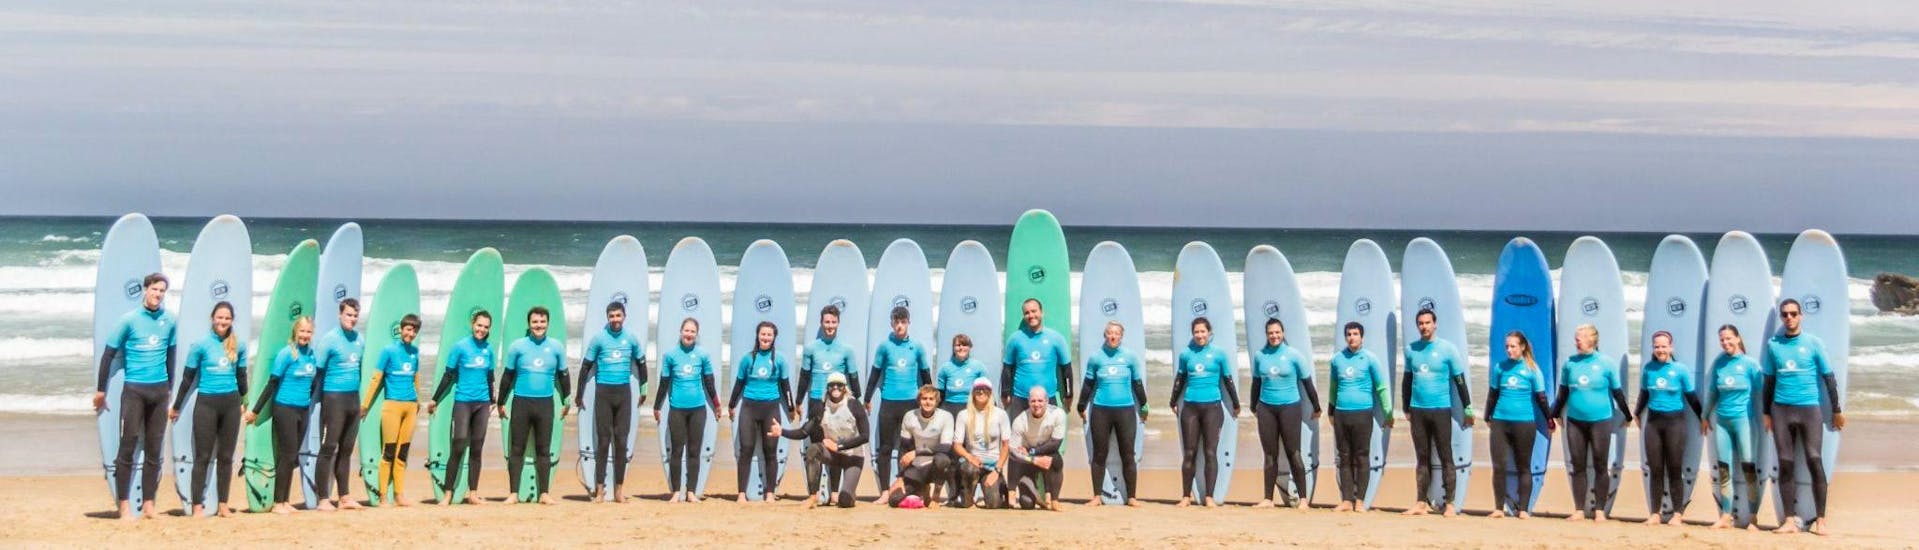 Cours privé de surf journée pour Enfants (6-12 ans) à Sagres.